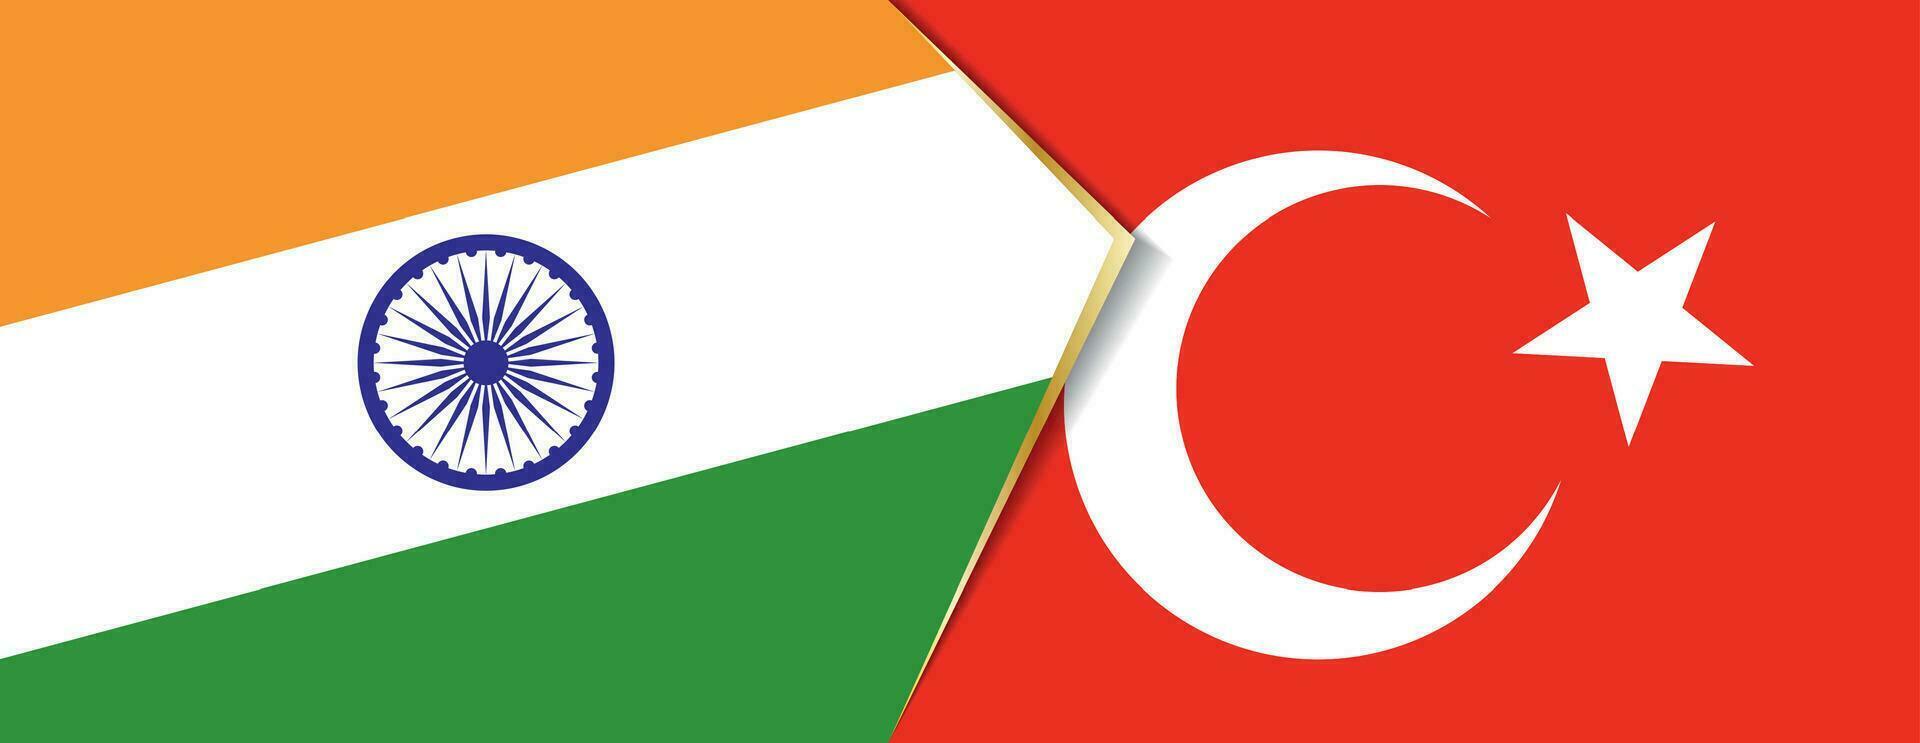 India y Turquía banderas, dos vector banderas